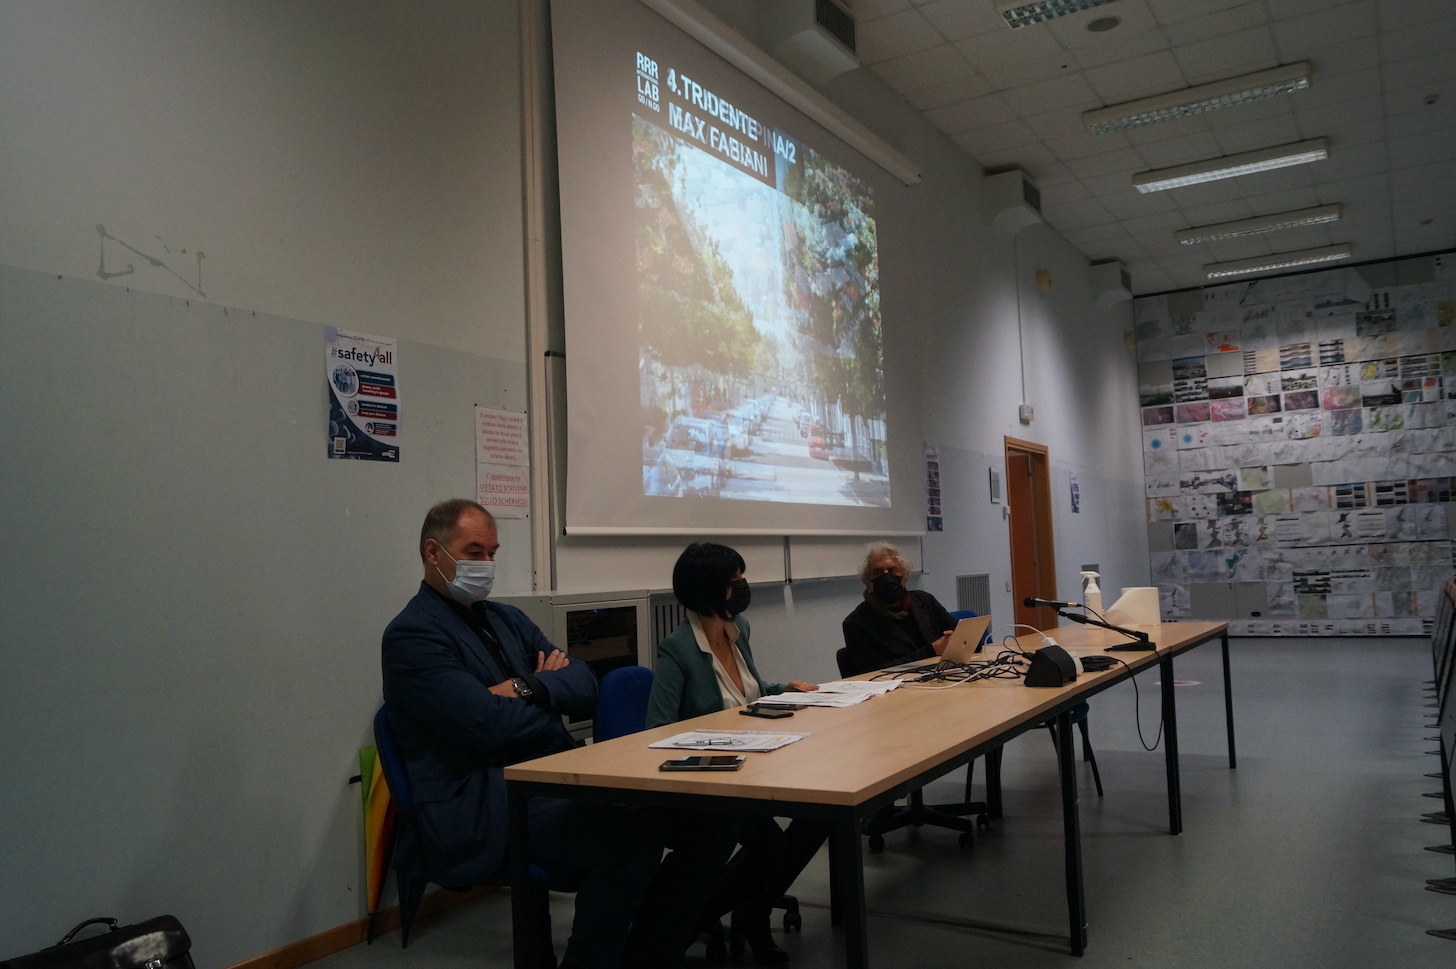 La città vista dagli studenti, Architettura ridisegna il confine a Gorizia